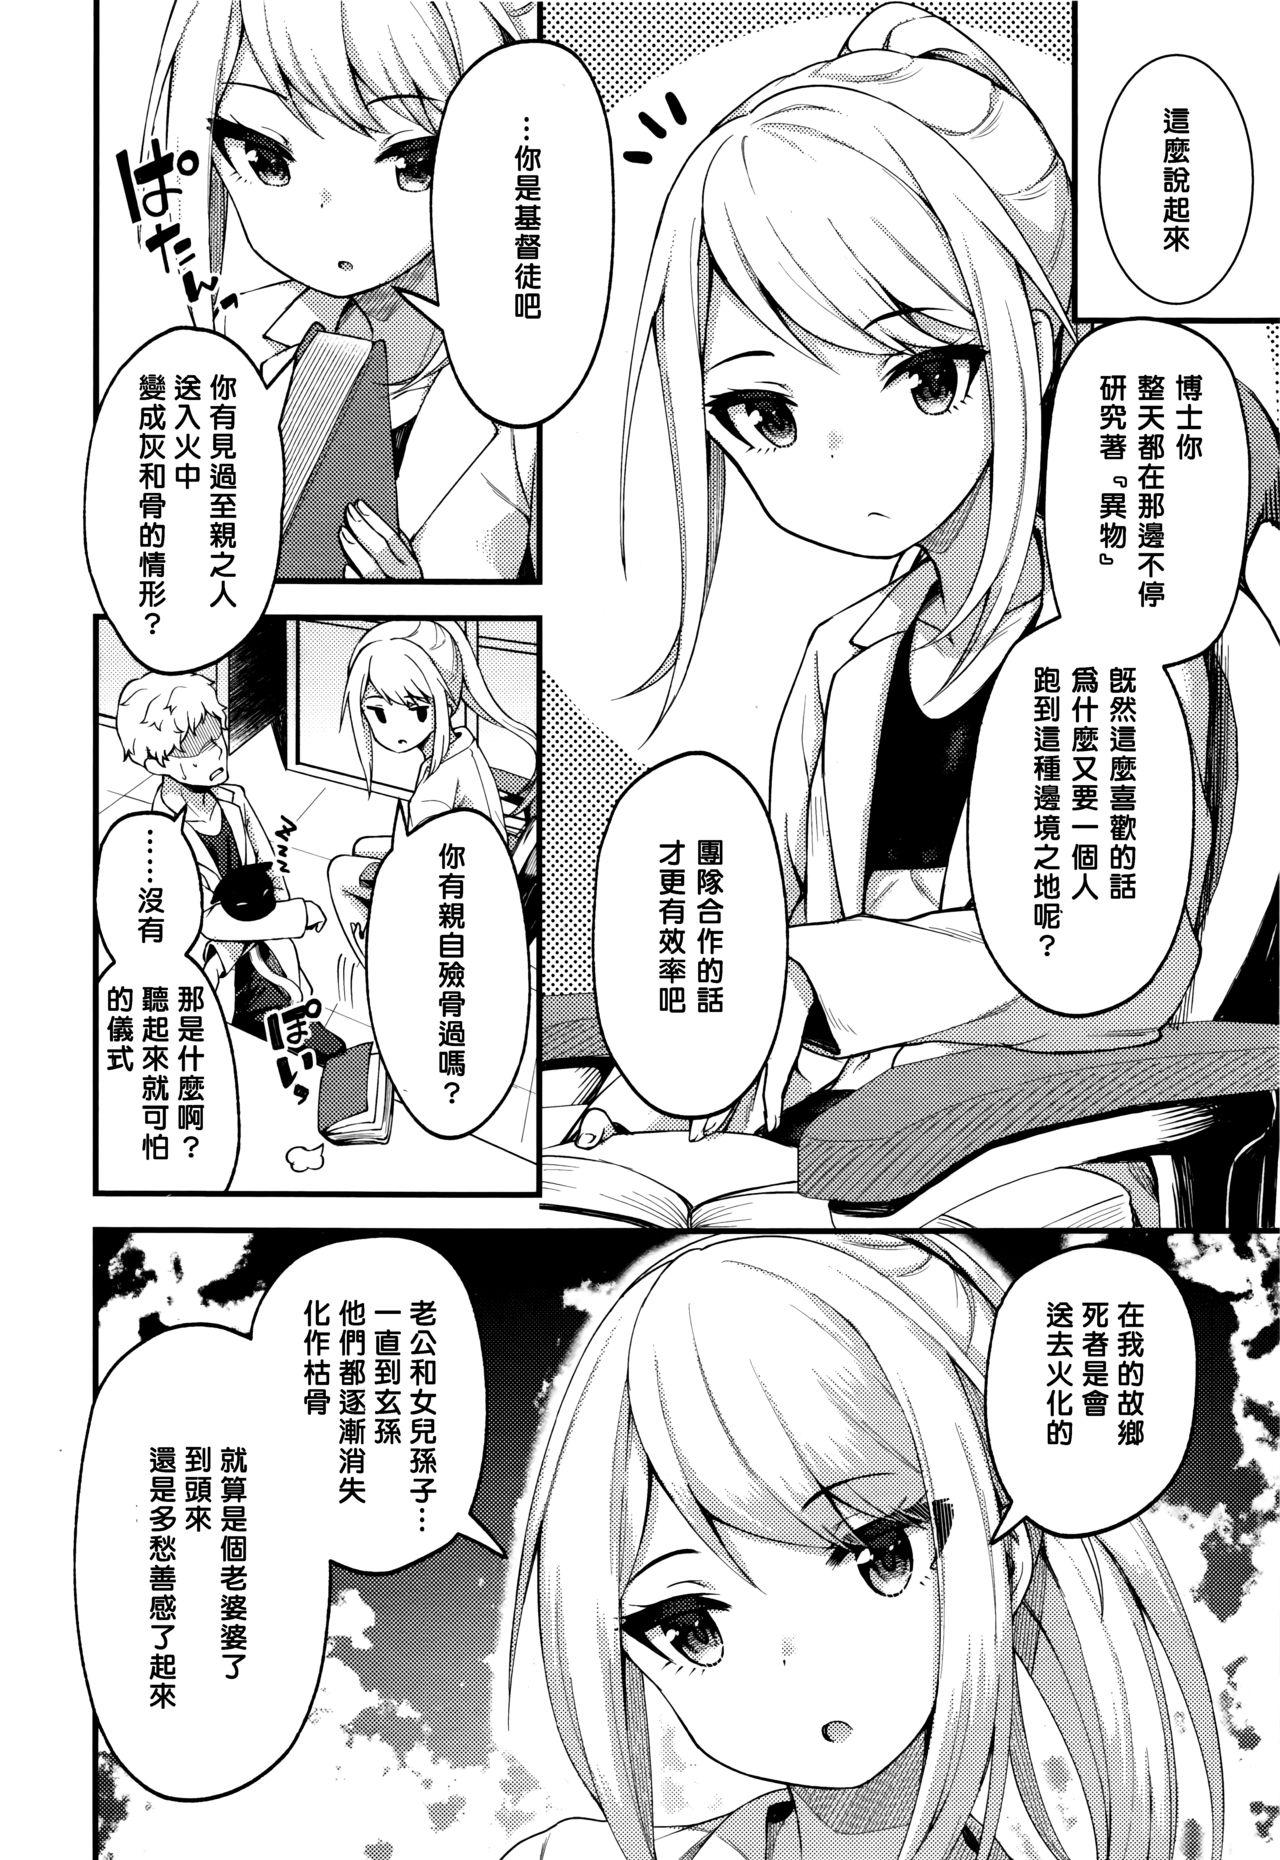 Classroom Asakura hakase no bibouroku Putita - Page 4